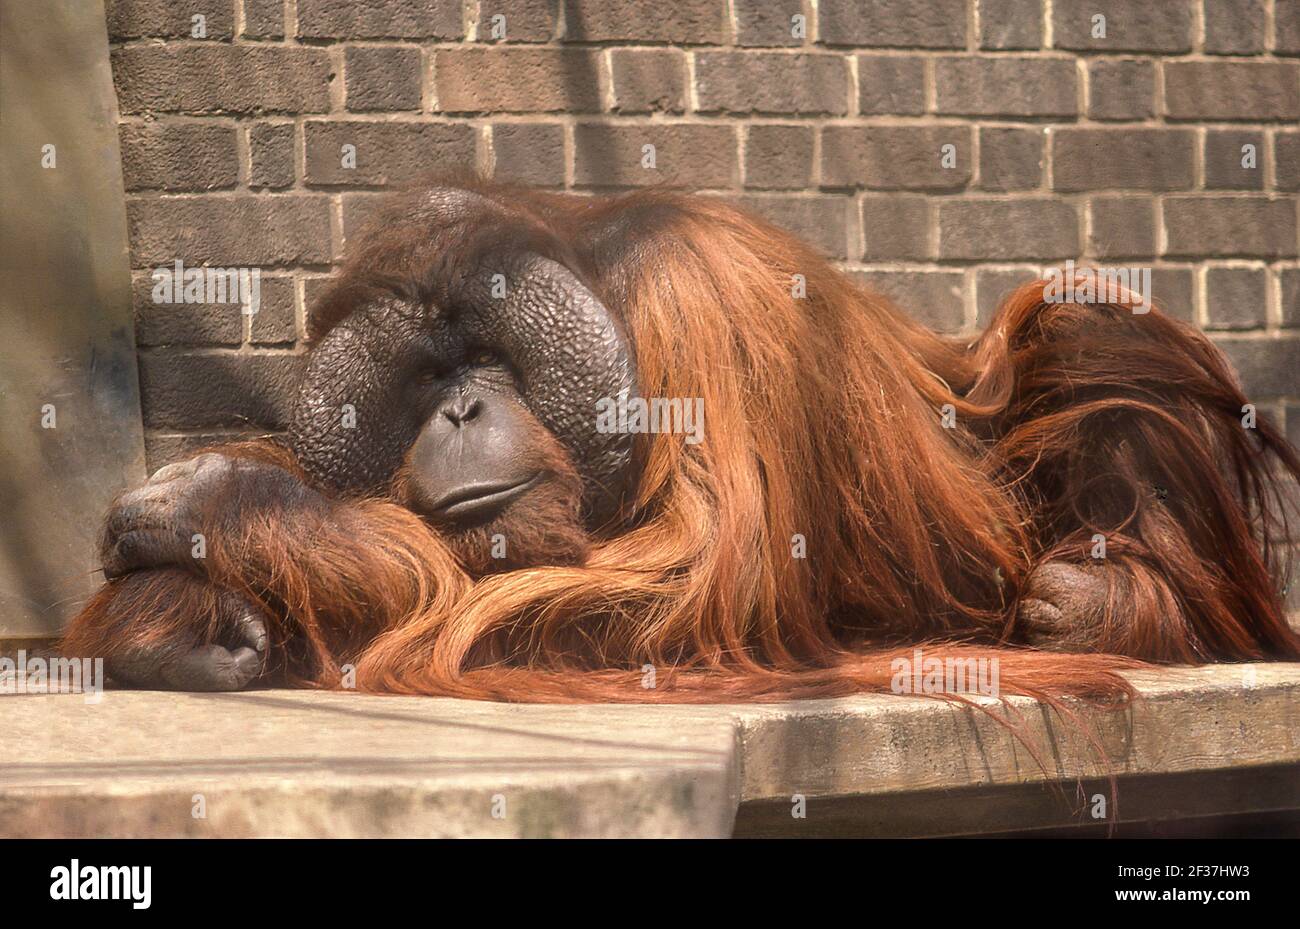 Orangutan au zoo de Londres, Regents Park, Londres, Grand Londres, Cité de Westminster, Angleterre, Royaume-Uni Banque D'Images